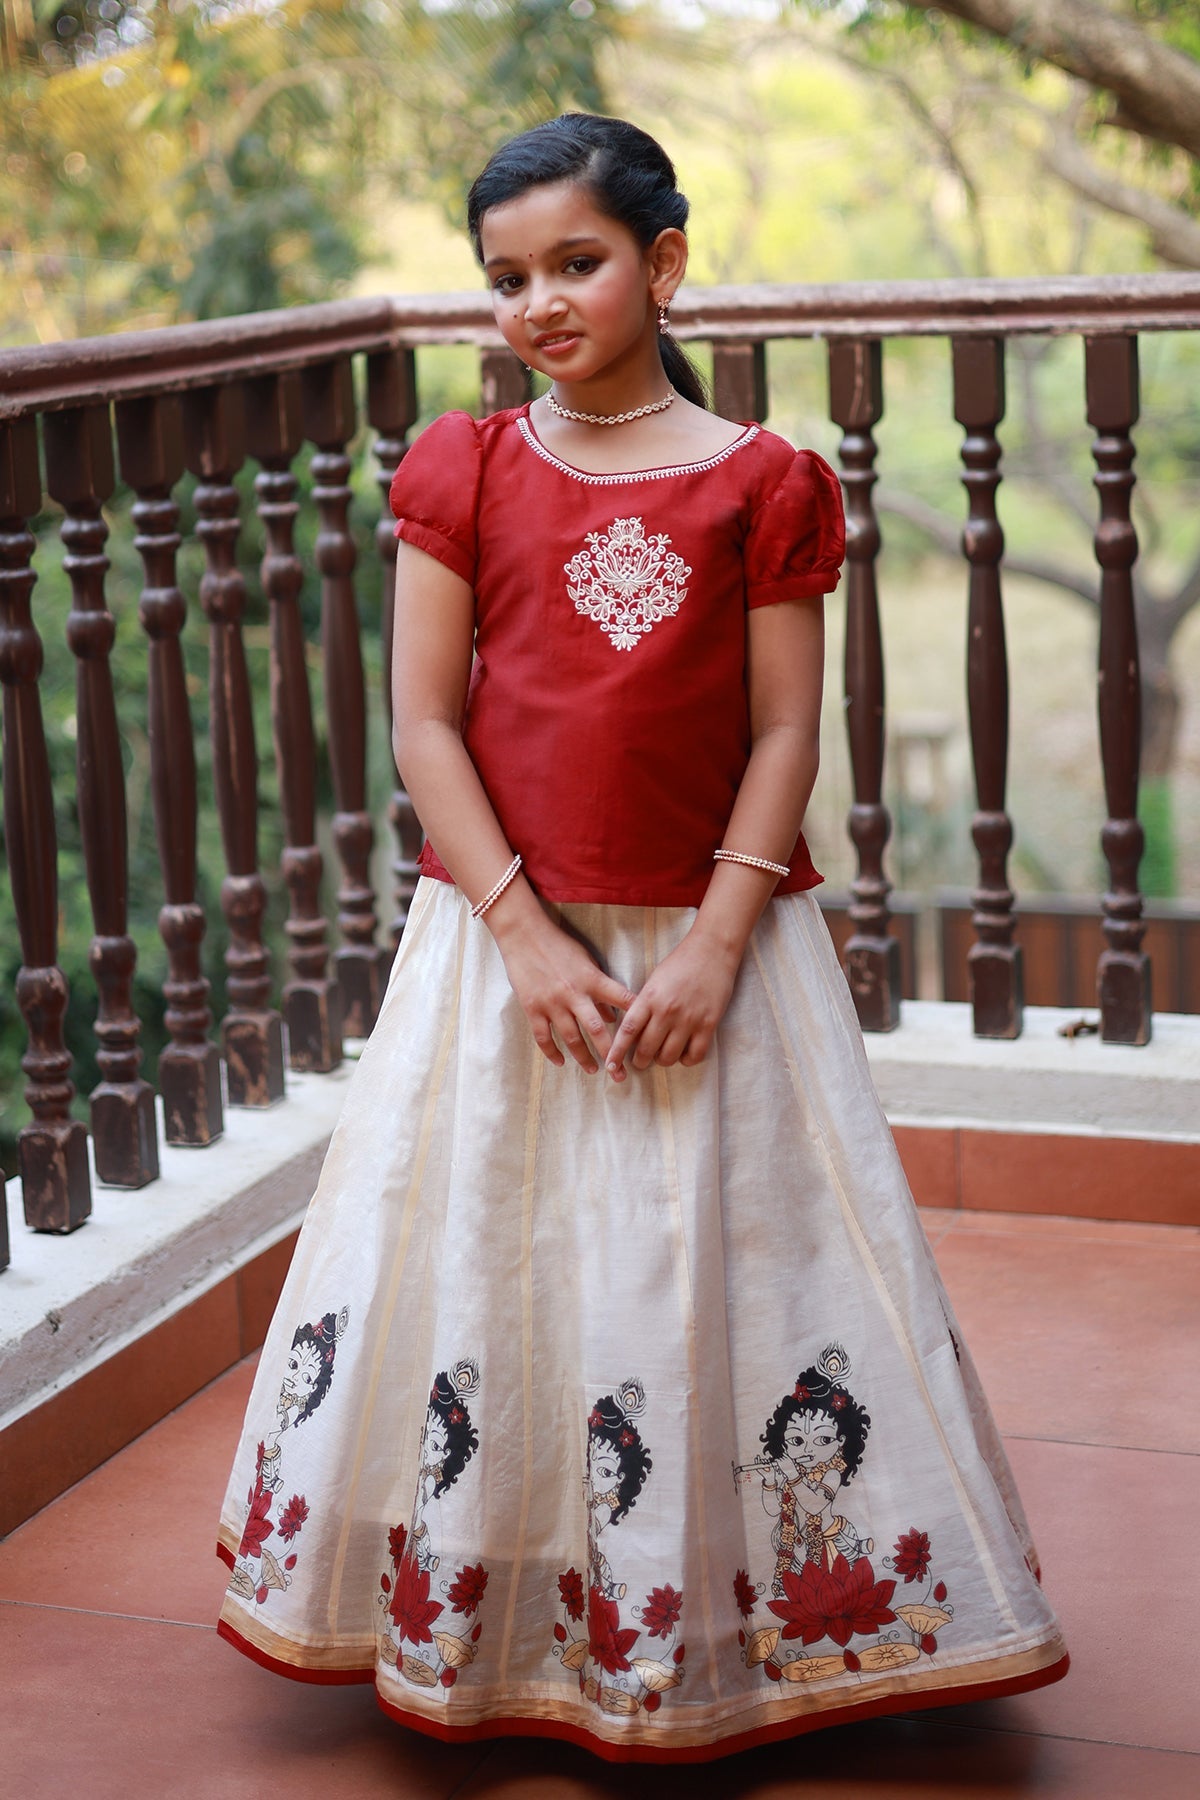 Muralidhara Krishna Mural Printed Kids Skirtsets Red Off White